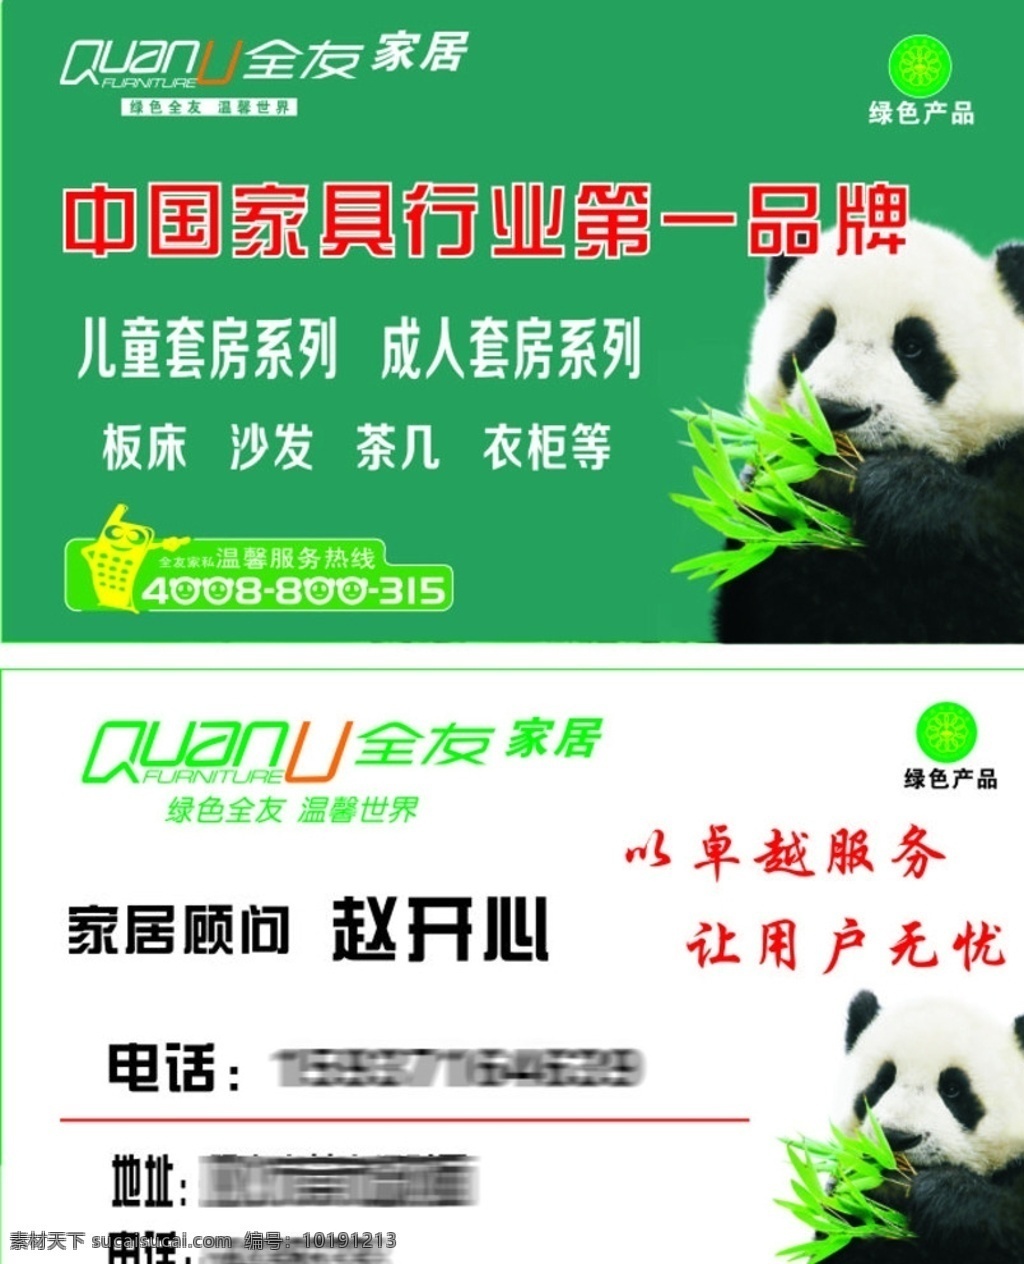 全友名片 全友 名片 绿色 背景 简单 大方 熊猫 大熊猫 家具 行业 品牌 名片卡片